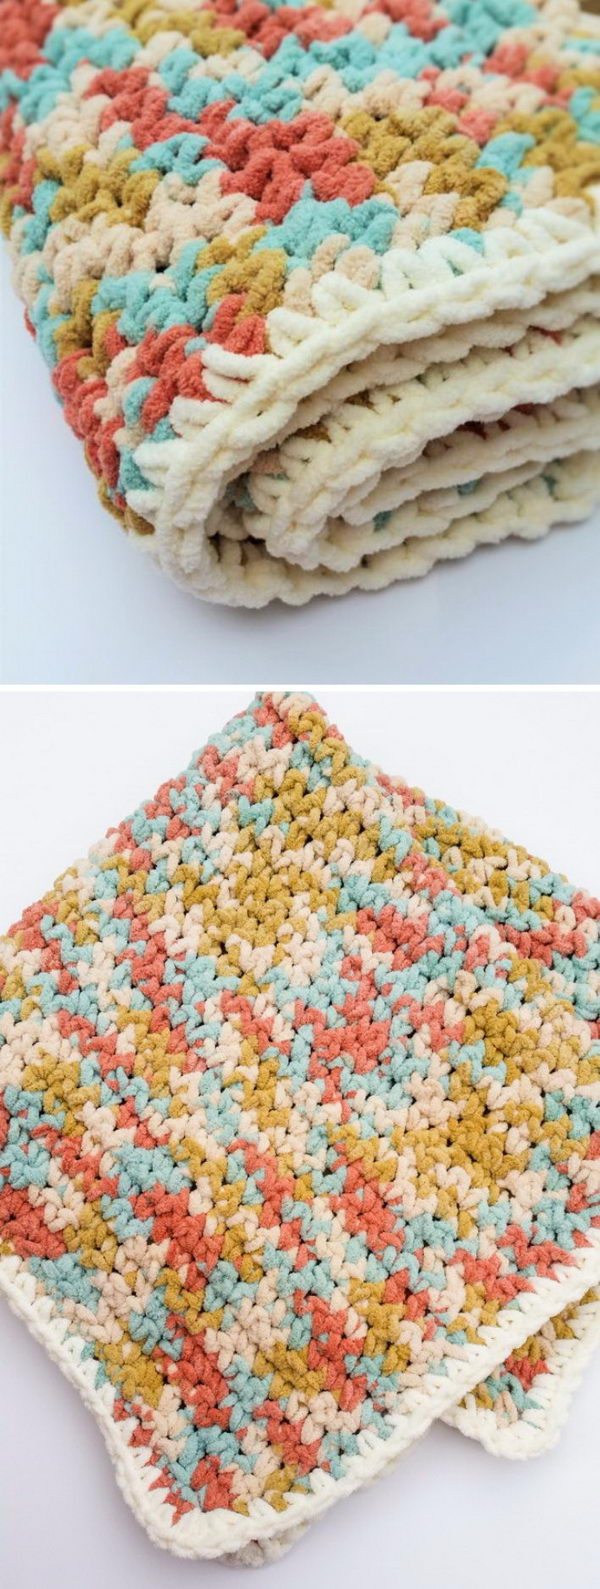 Easy Baby Crochet Blanket Pattern 30 Free Crochet Patterns For Blankets Hative